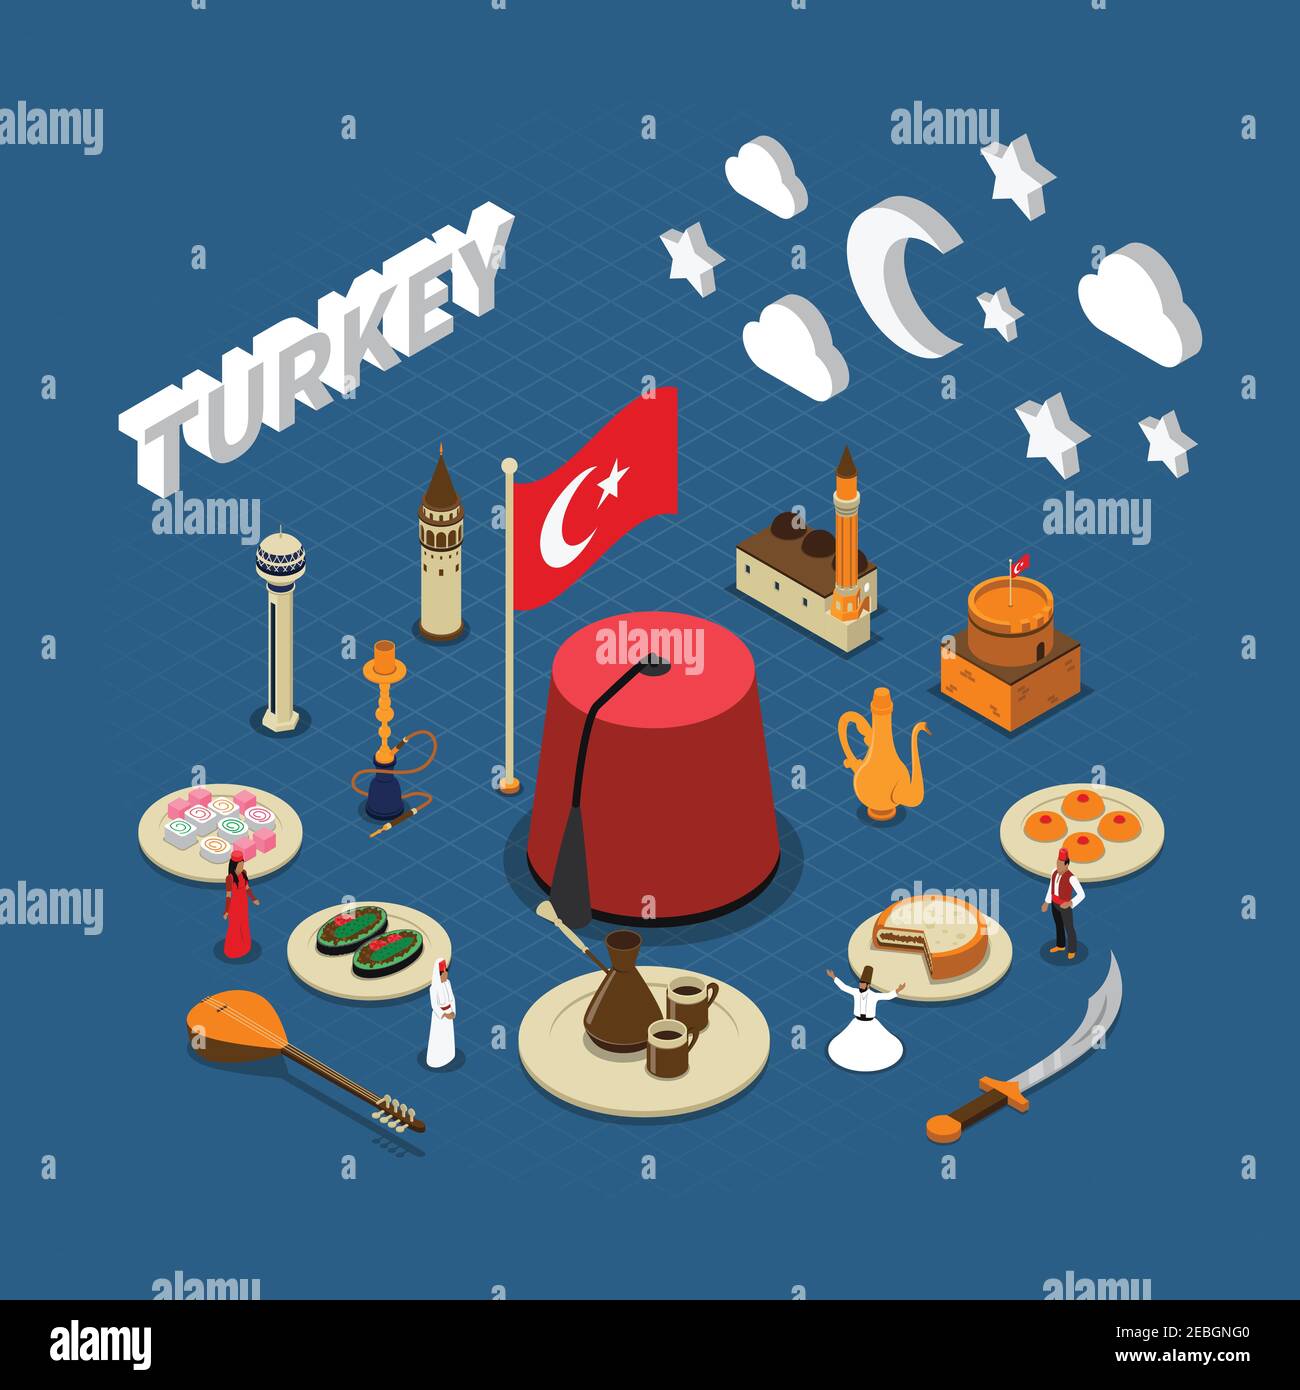 Türkische kulturelle isometrische Symbole Komposition Plakat für Reisende mit traditionellen Süßigkeiten Wahrzeichen und rote Quaste Hut Vektor Illustration Stock Vektor